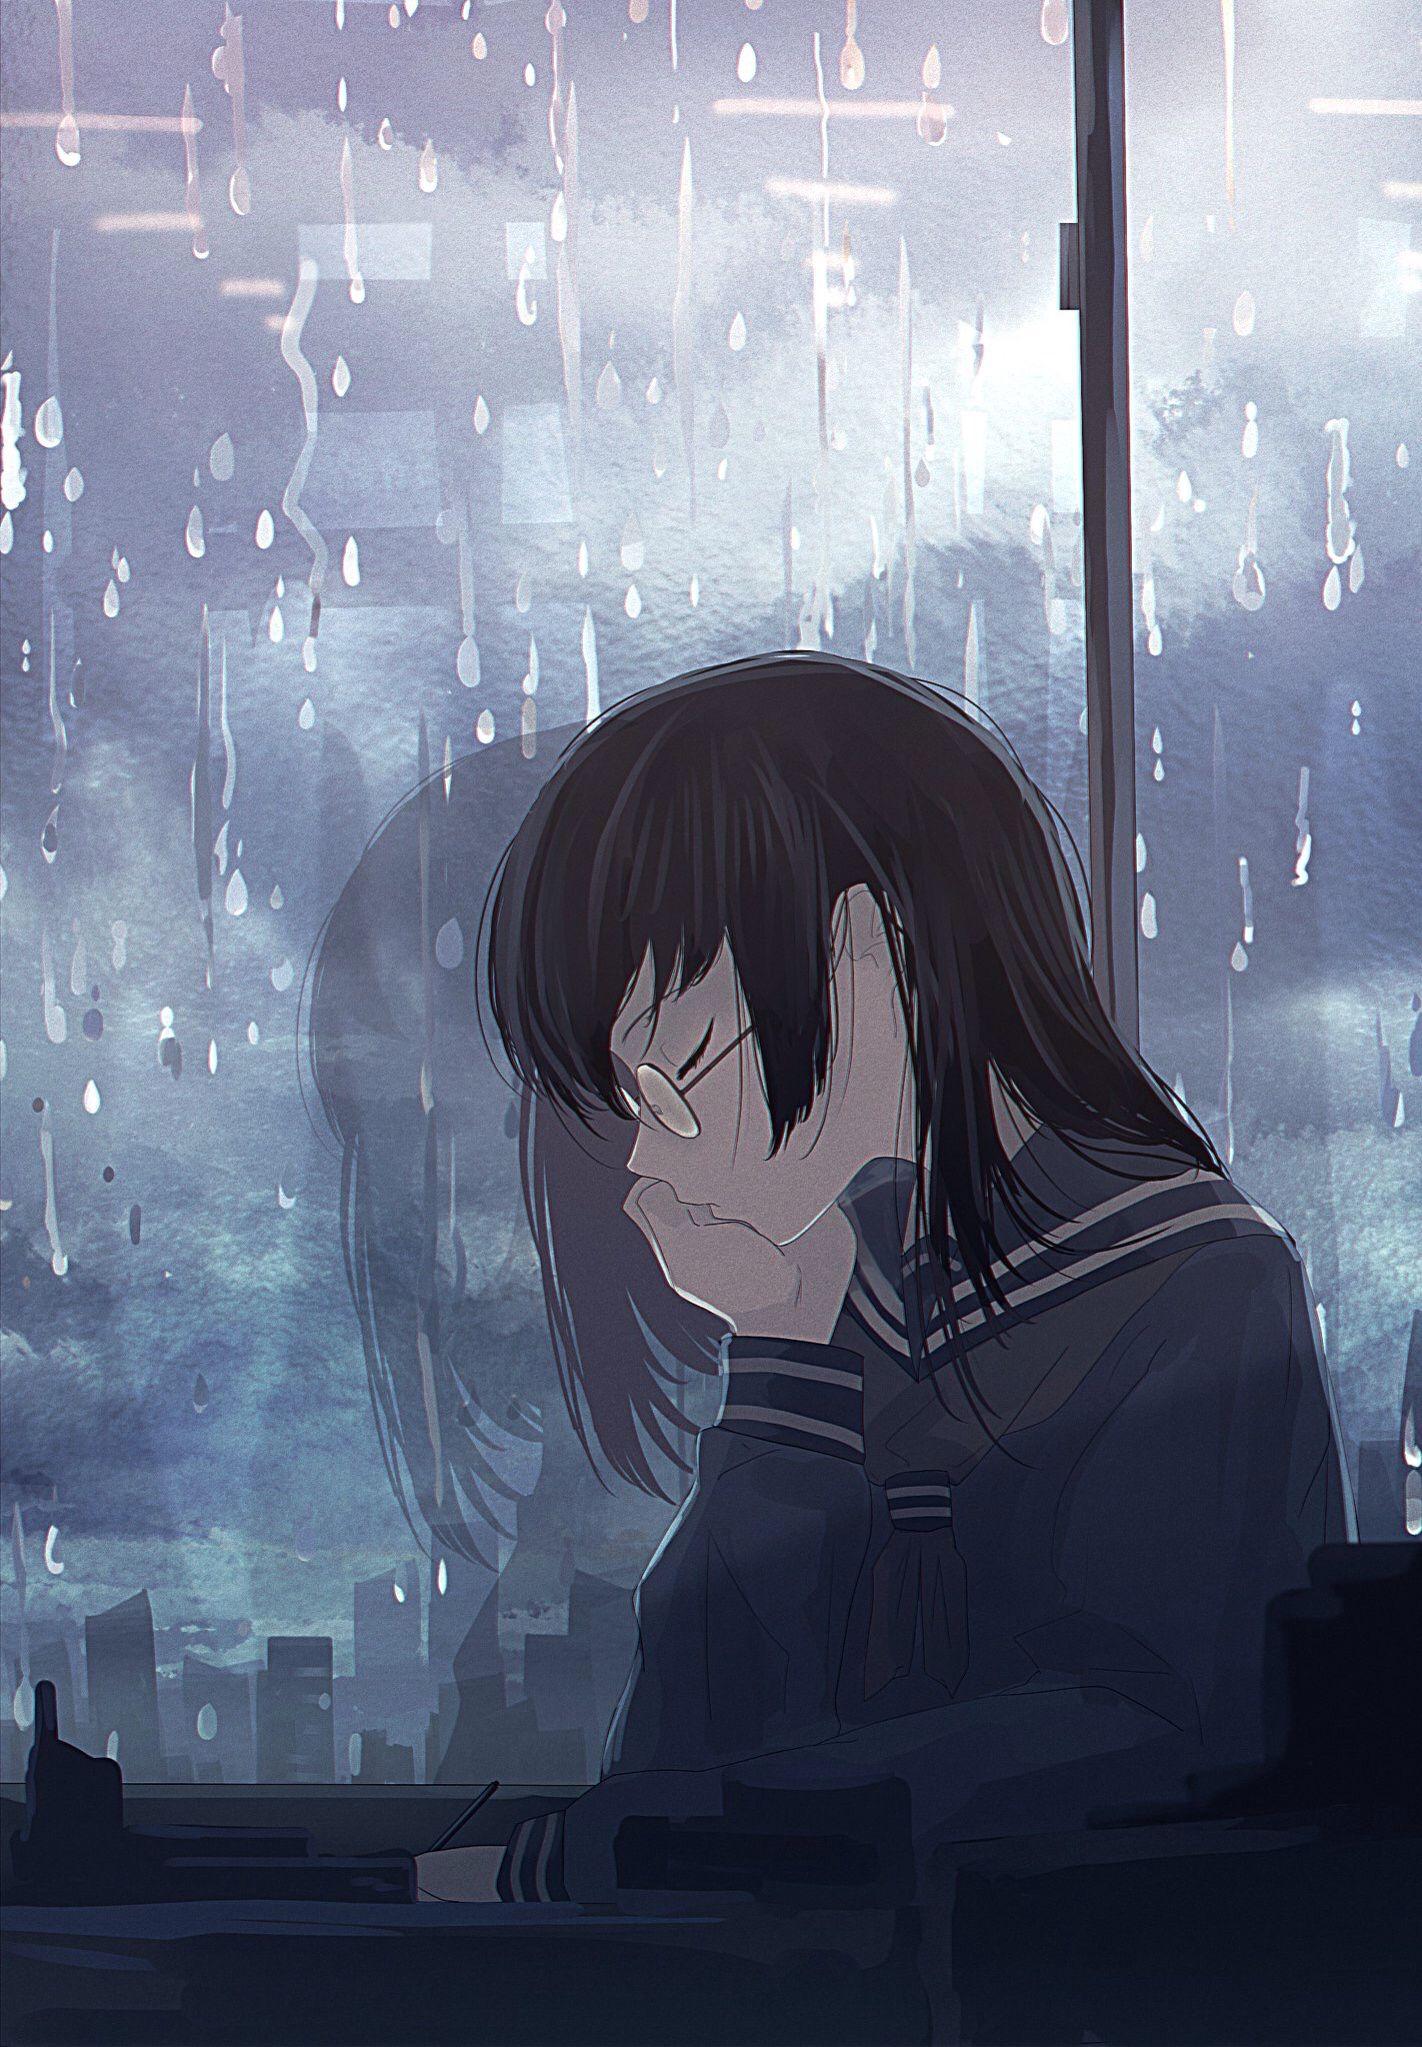 Anime Sad Girl Wallpapers - Top Free Anime Sad Girl Backgrounds